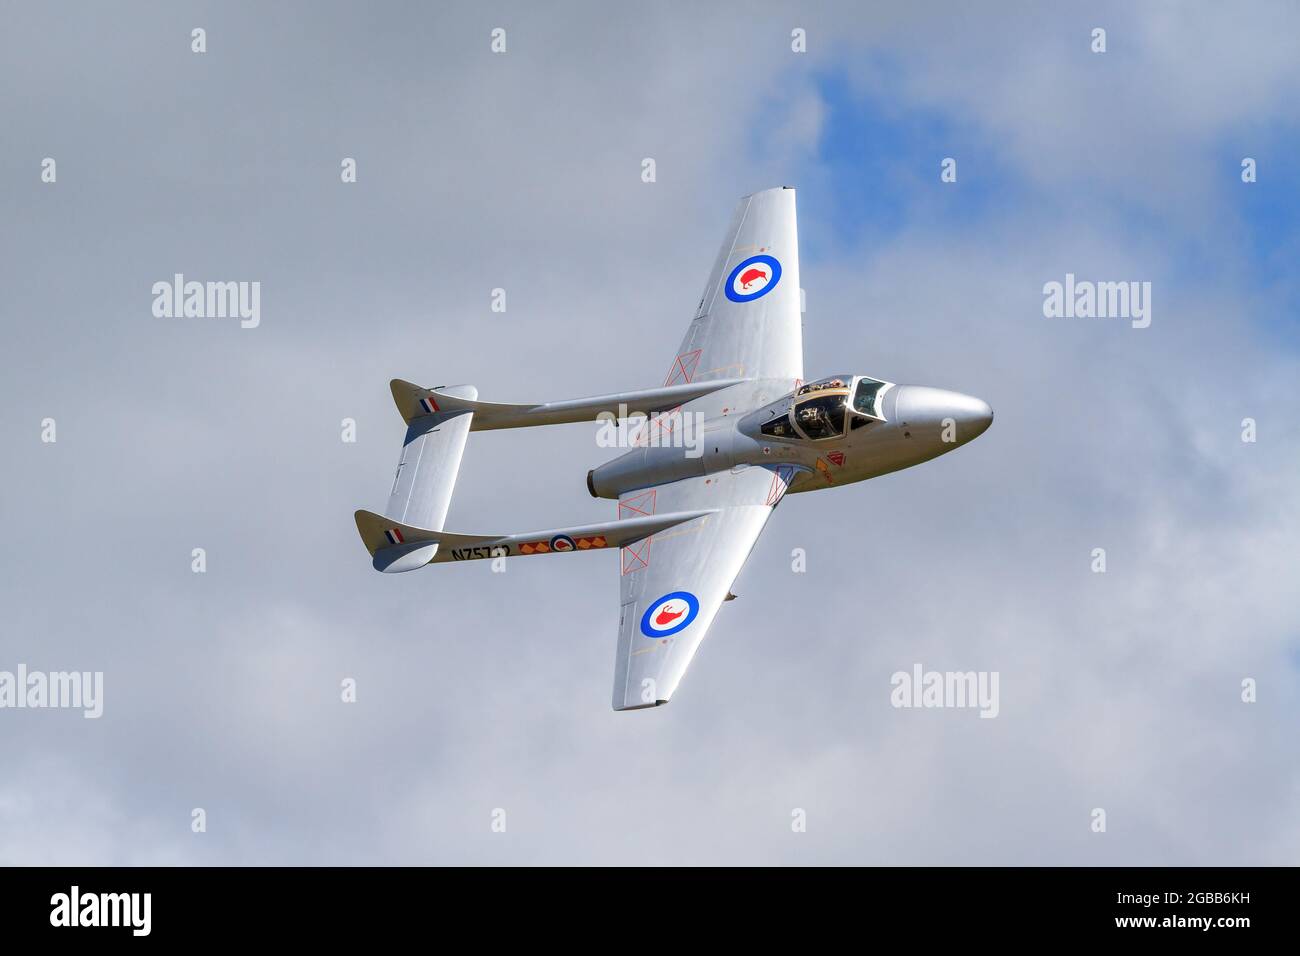 Un Vampire de Havilland DH115, un chasseur à réaction britannique des années 1940, dans le ciel, lors d'un spectacle aérien. Il est peint dans les couleurs de la New Zealand Air Force Banque D'Images